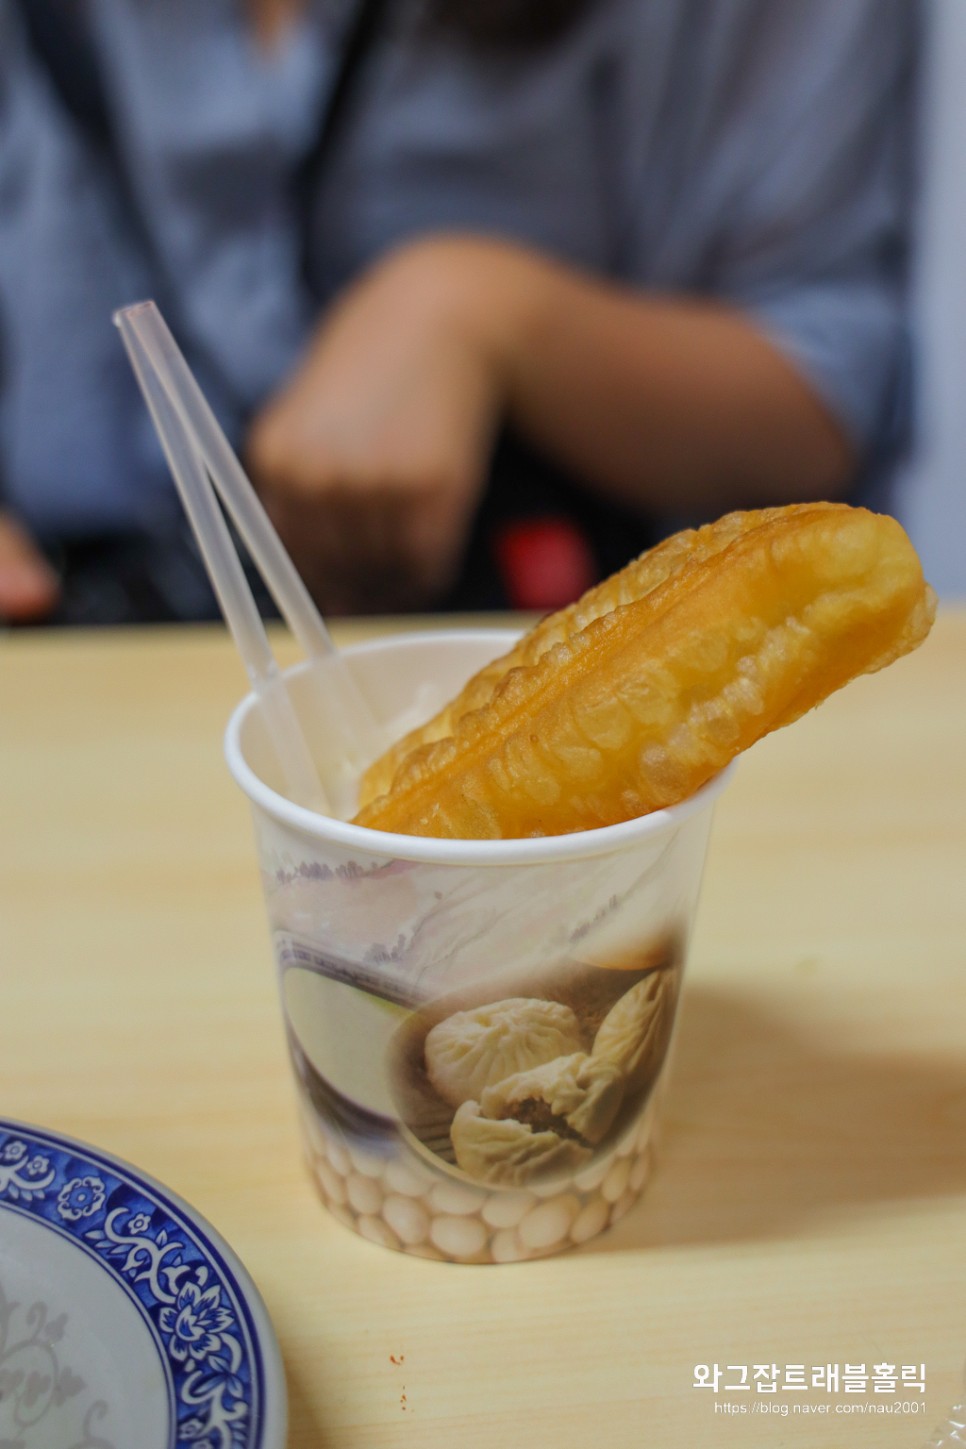 타이베이여행 시먼딩 하루코스 맛집 펑리수 샴푸마사지 대만 항공권 가격